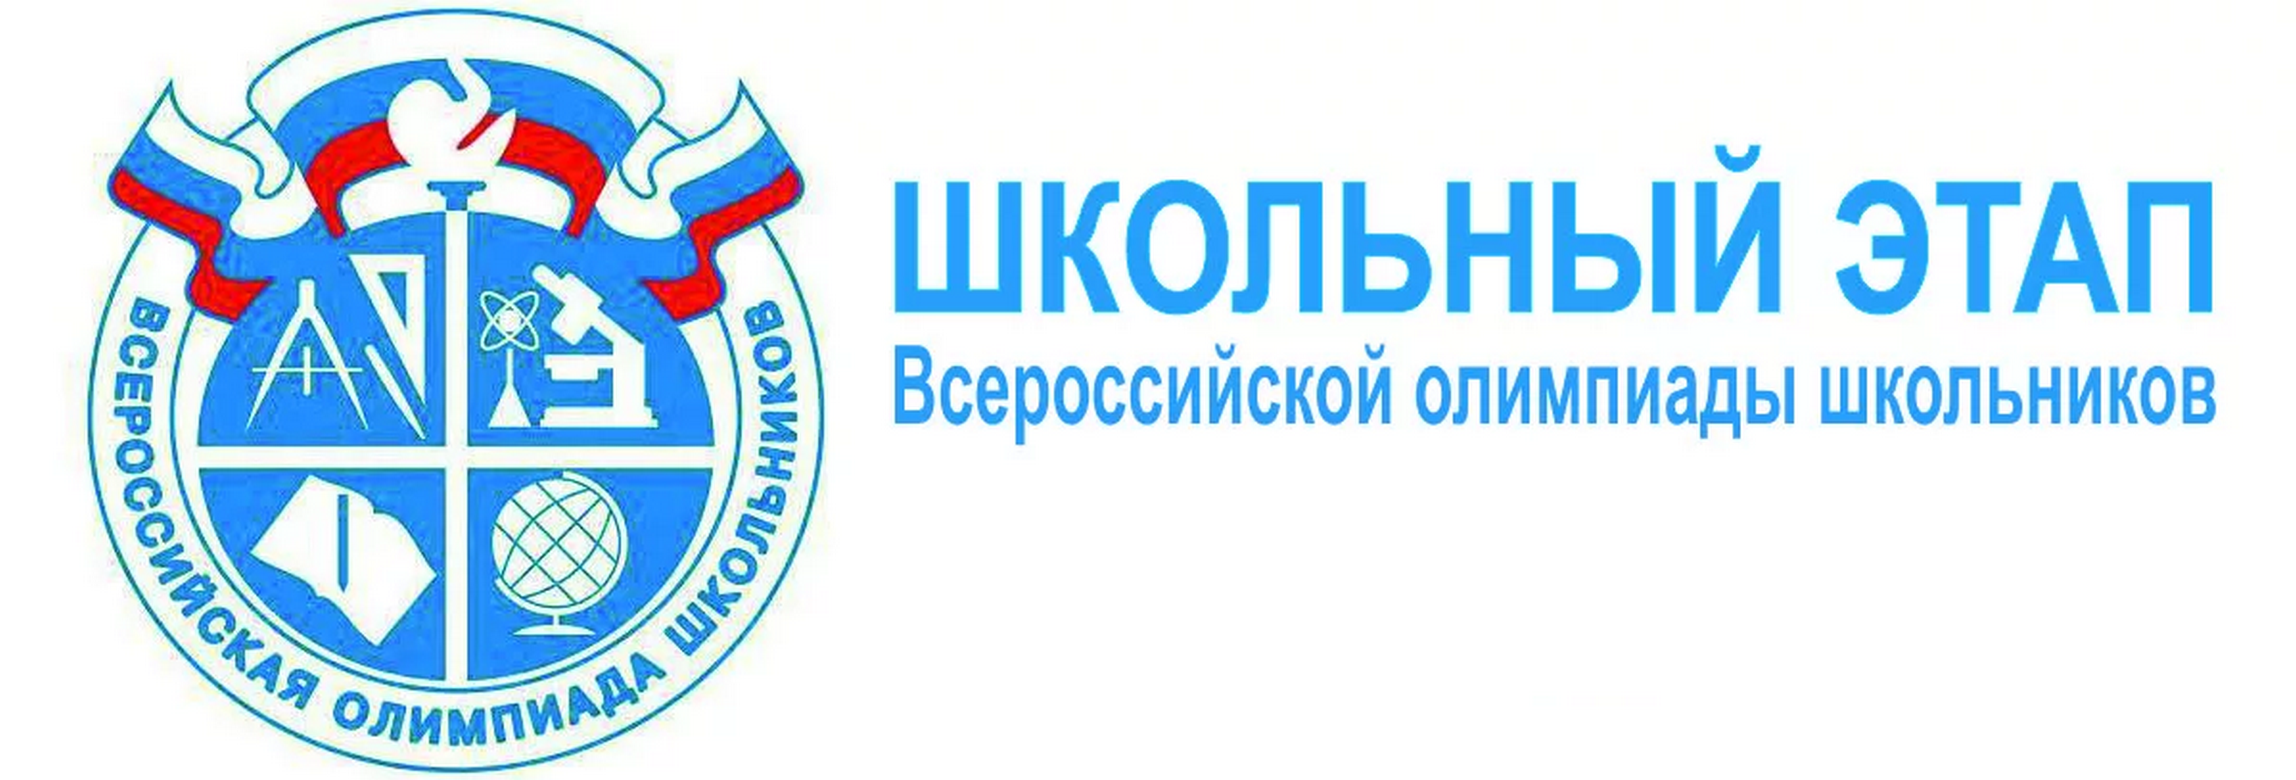 Проведение школьного этапа всероссийской олимпиады школьников в Ярцевском районе Смоленской области в 2023/24 учебном году.